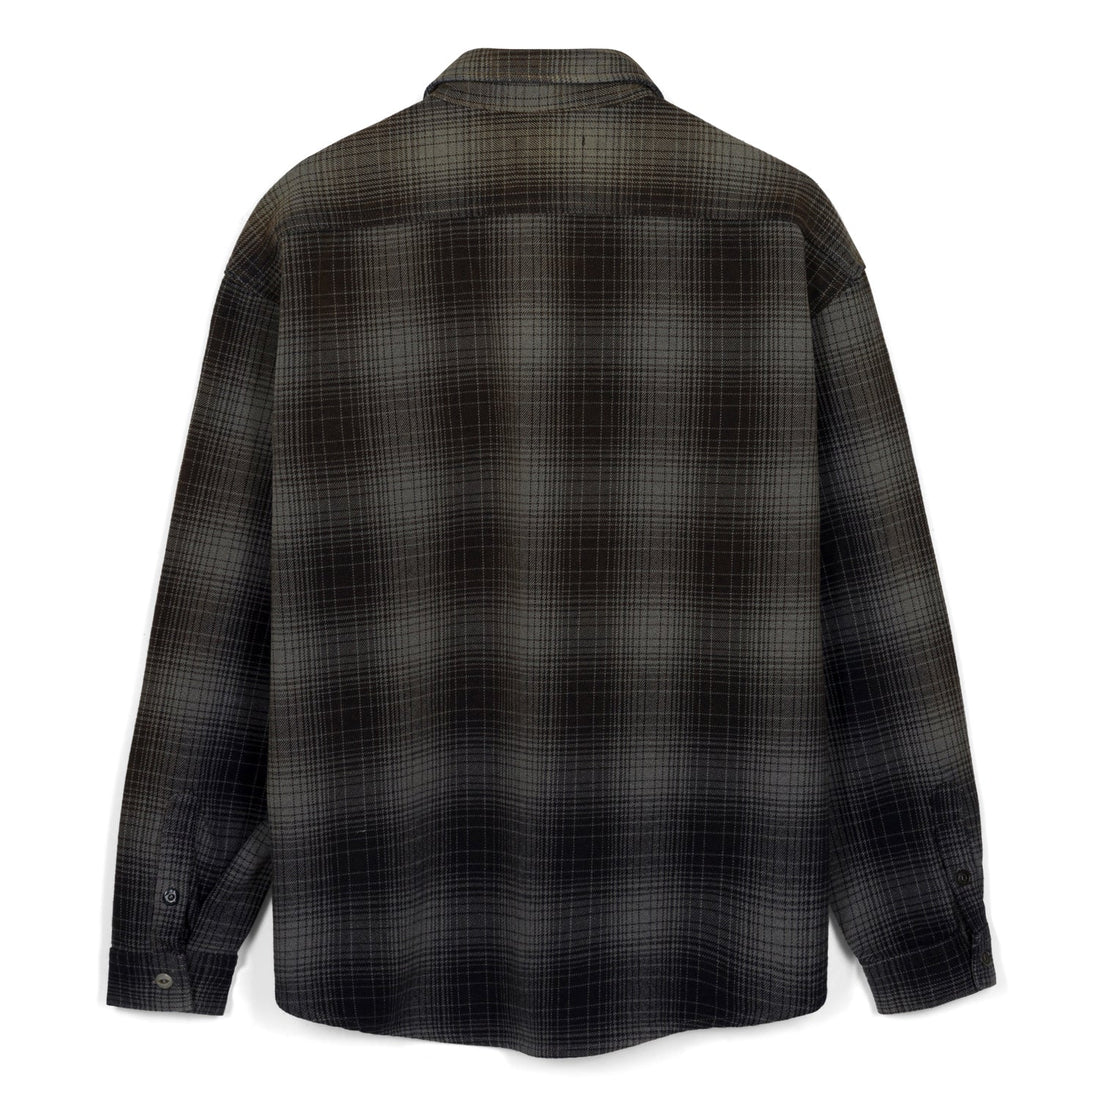 All Time High - Baynham Flannel Shirt in Coal/Ash